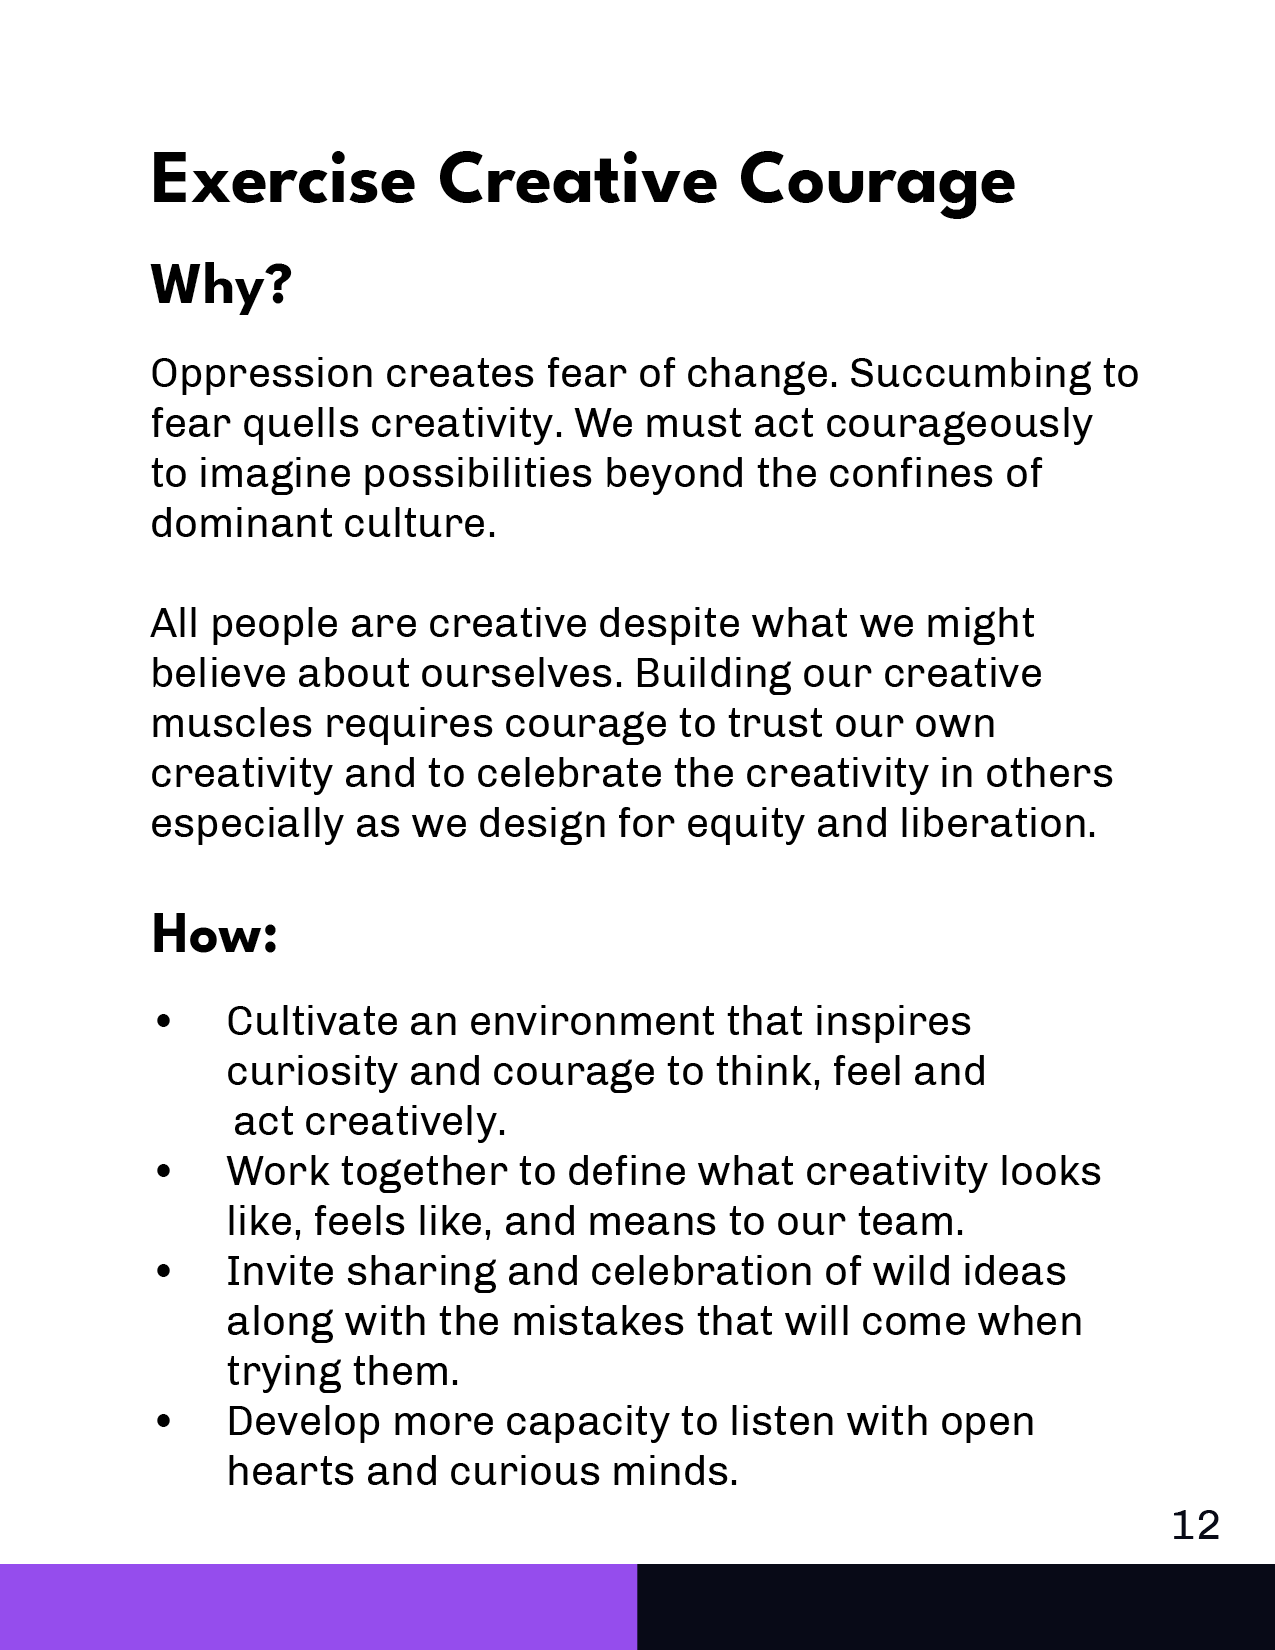 CreativeCourage_Card.png